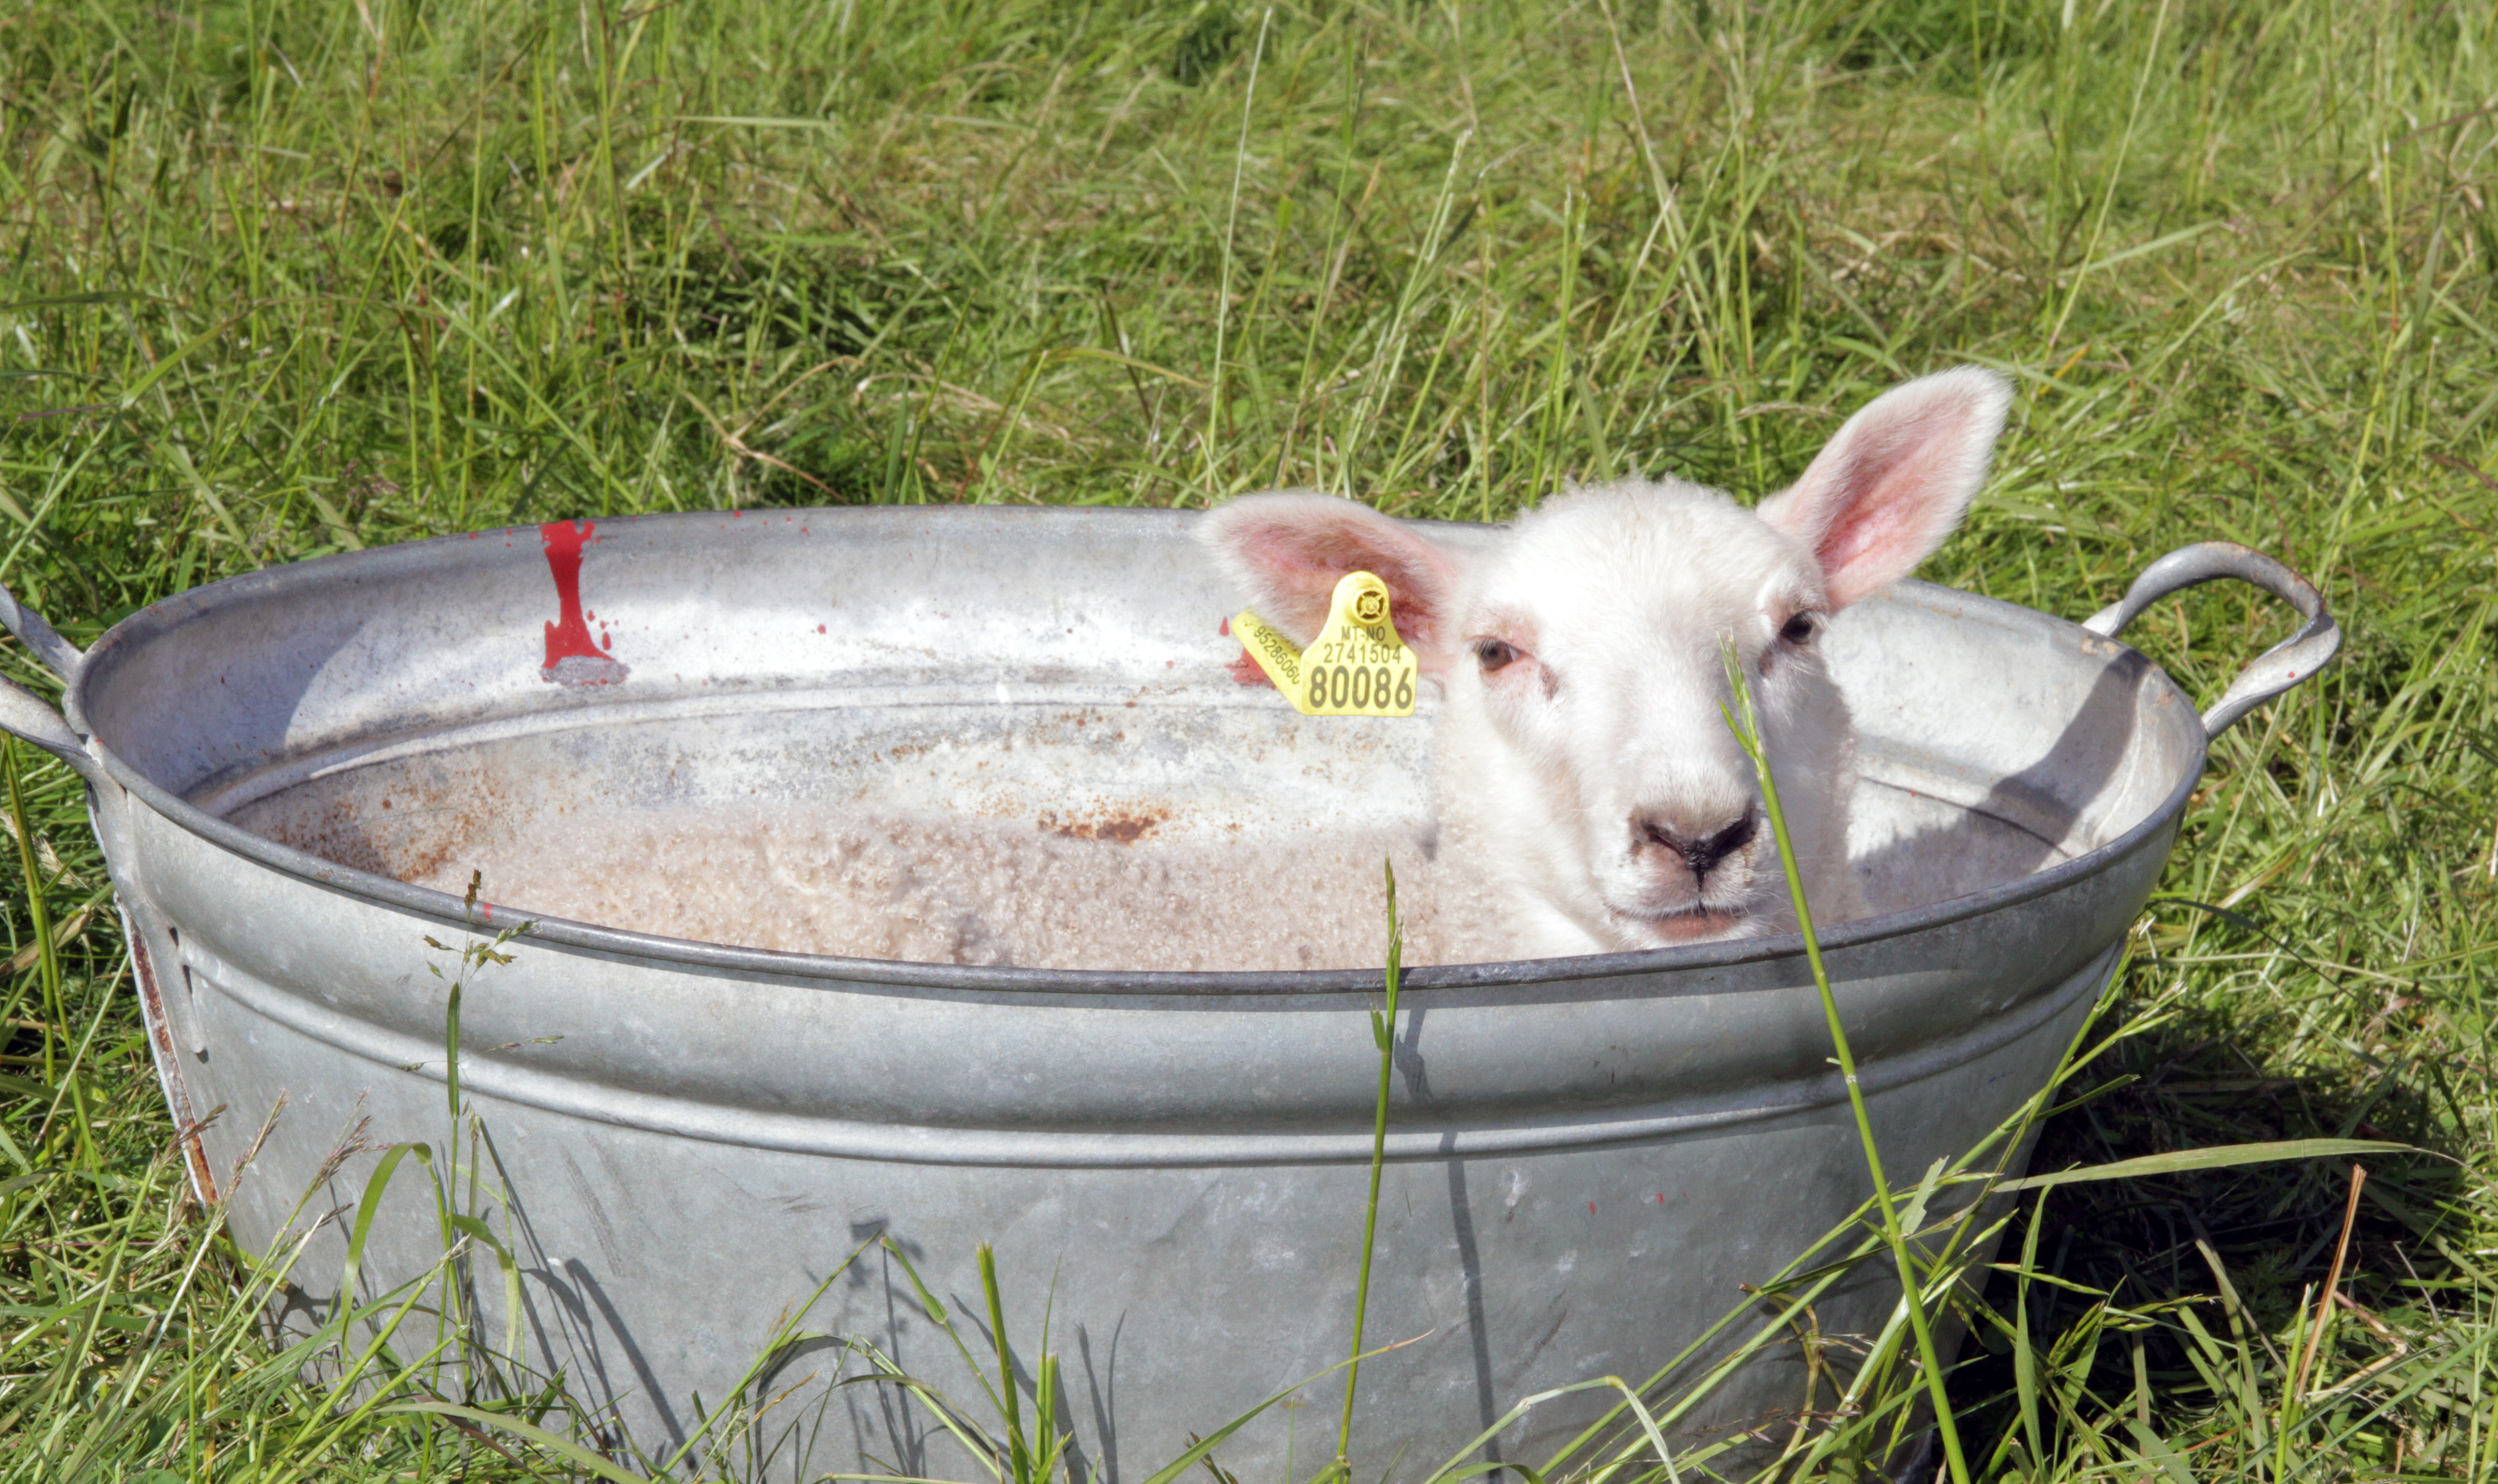 I prosjektet ble det samlet inn ullprøver fra lam i ulike miljø. (Foto: Anita Land)